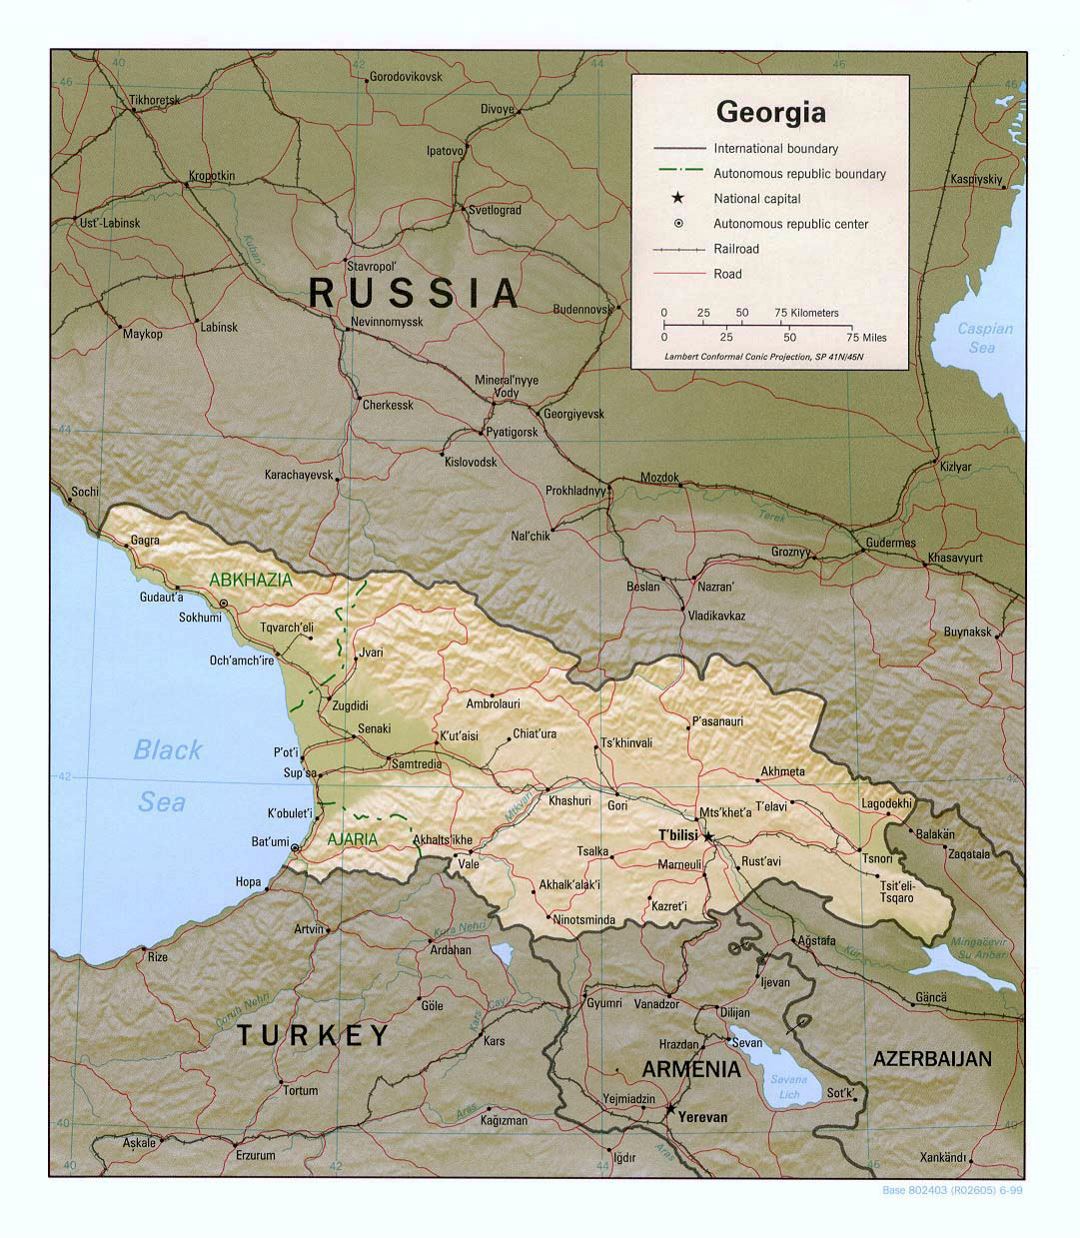 Detallado mapa político de Georgia con socorro, carreteras, ferrocarriles y principales ciudades - 1999